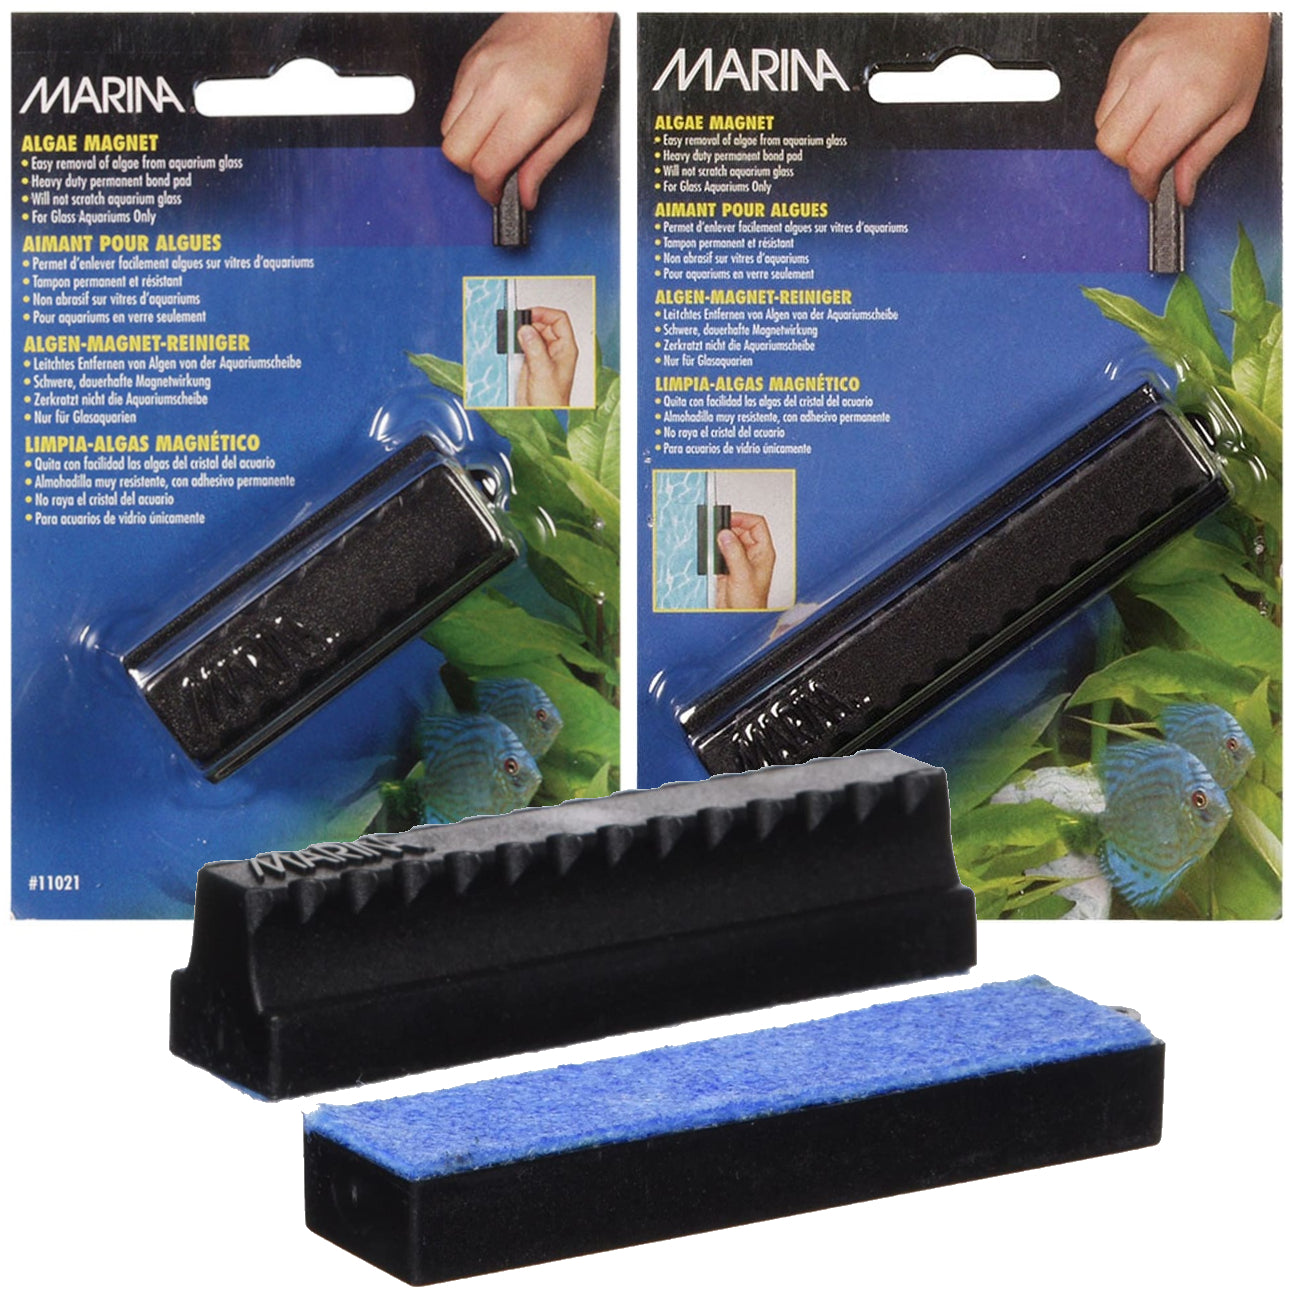 Marina Algae Magnet Cleaner 2 Sizes